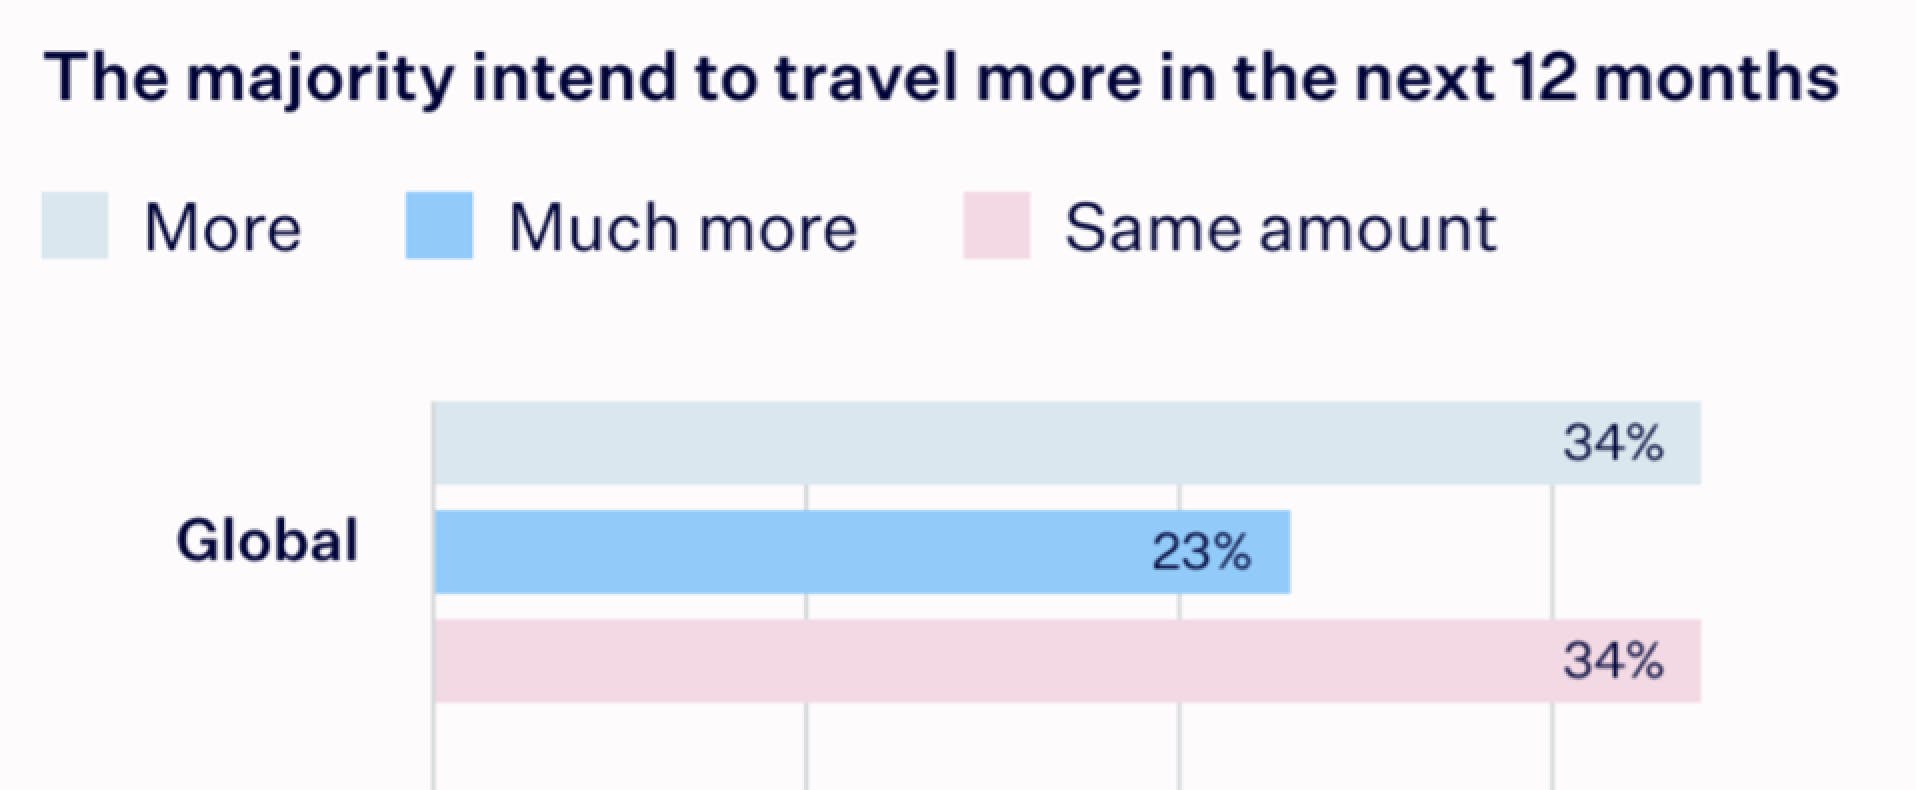 La majorité des voyageurs a l'intention de voyager davantage au cours des 12 prochains mois